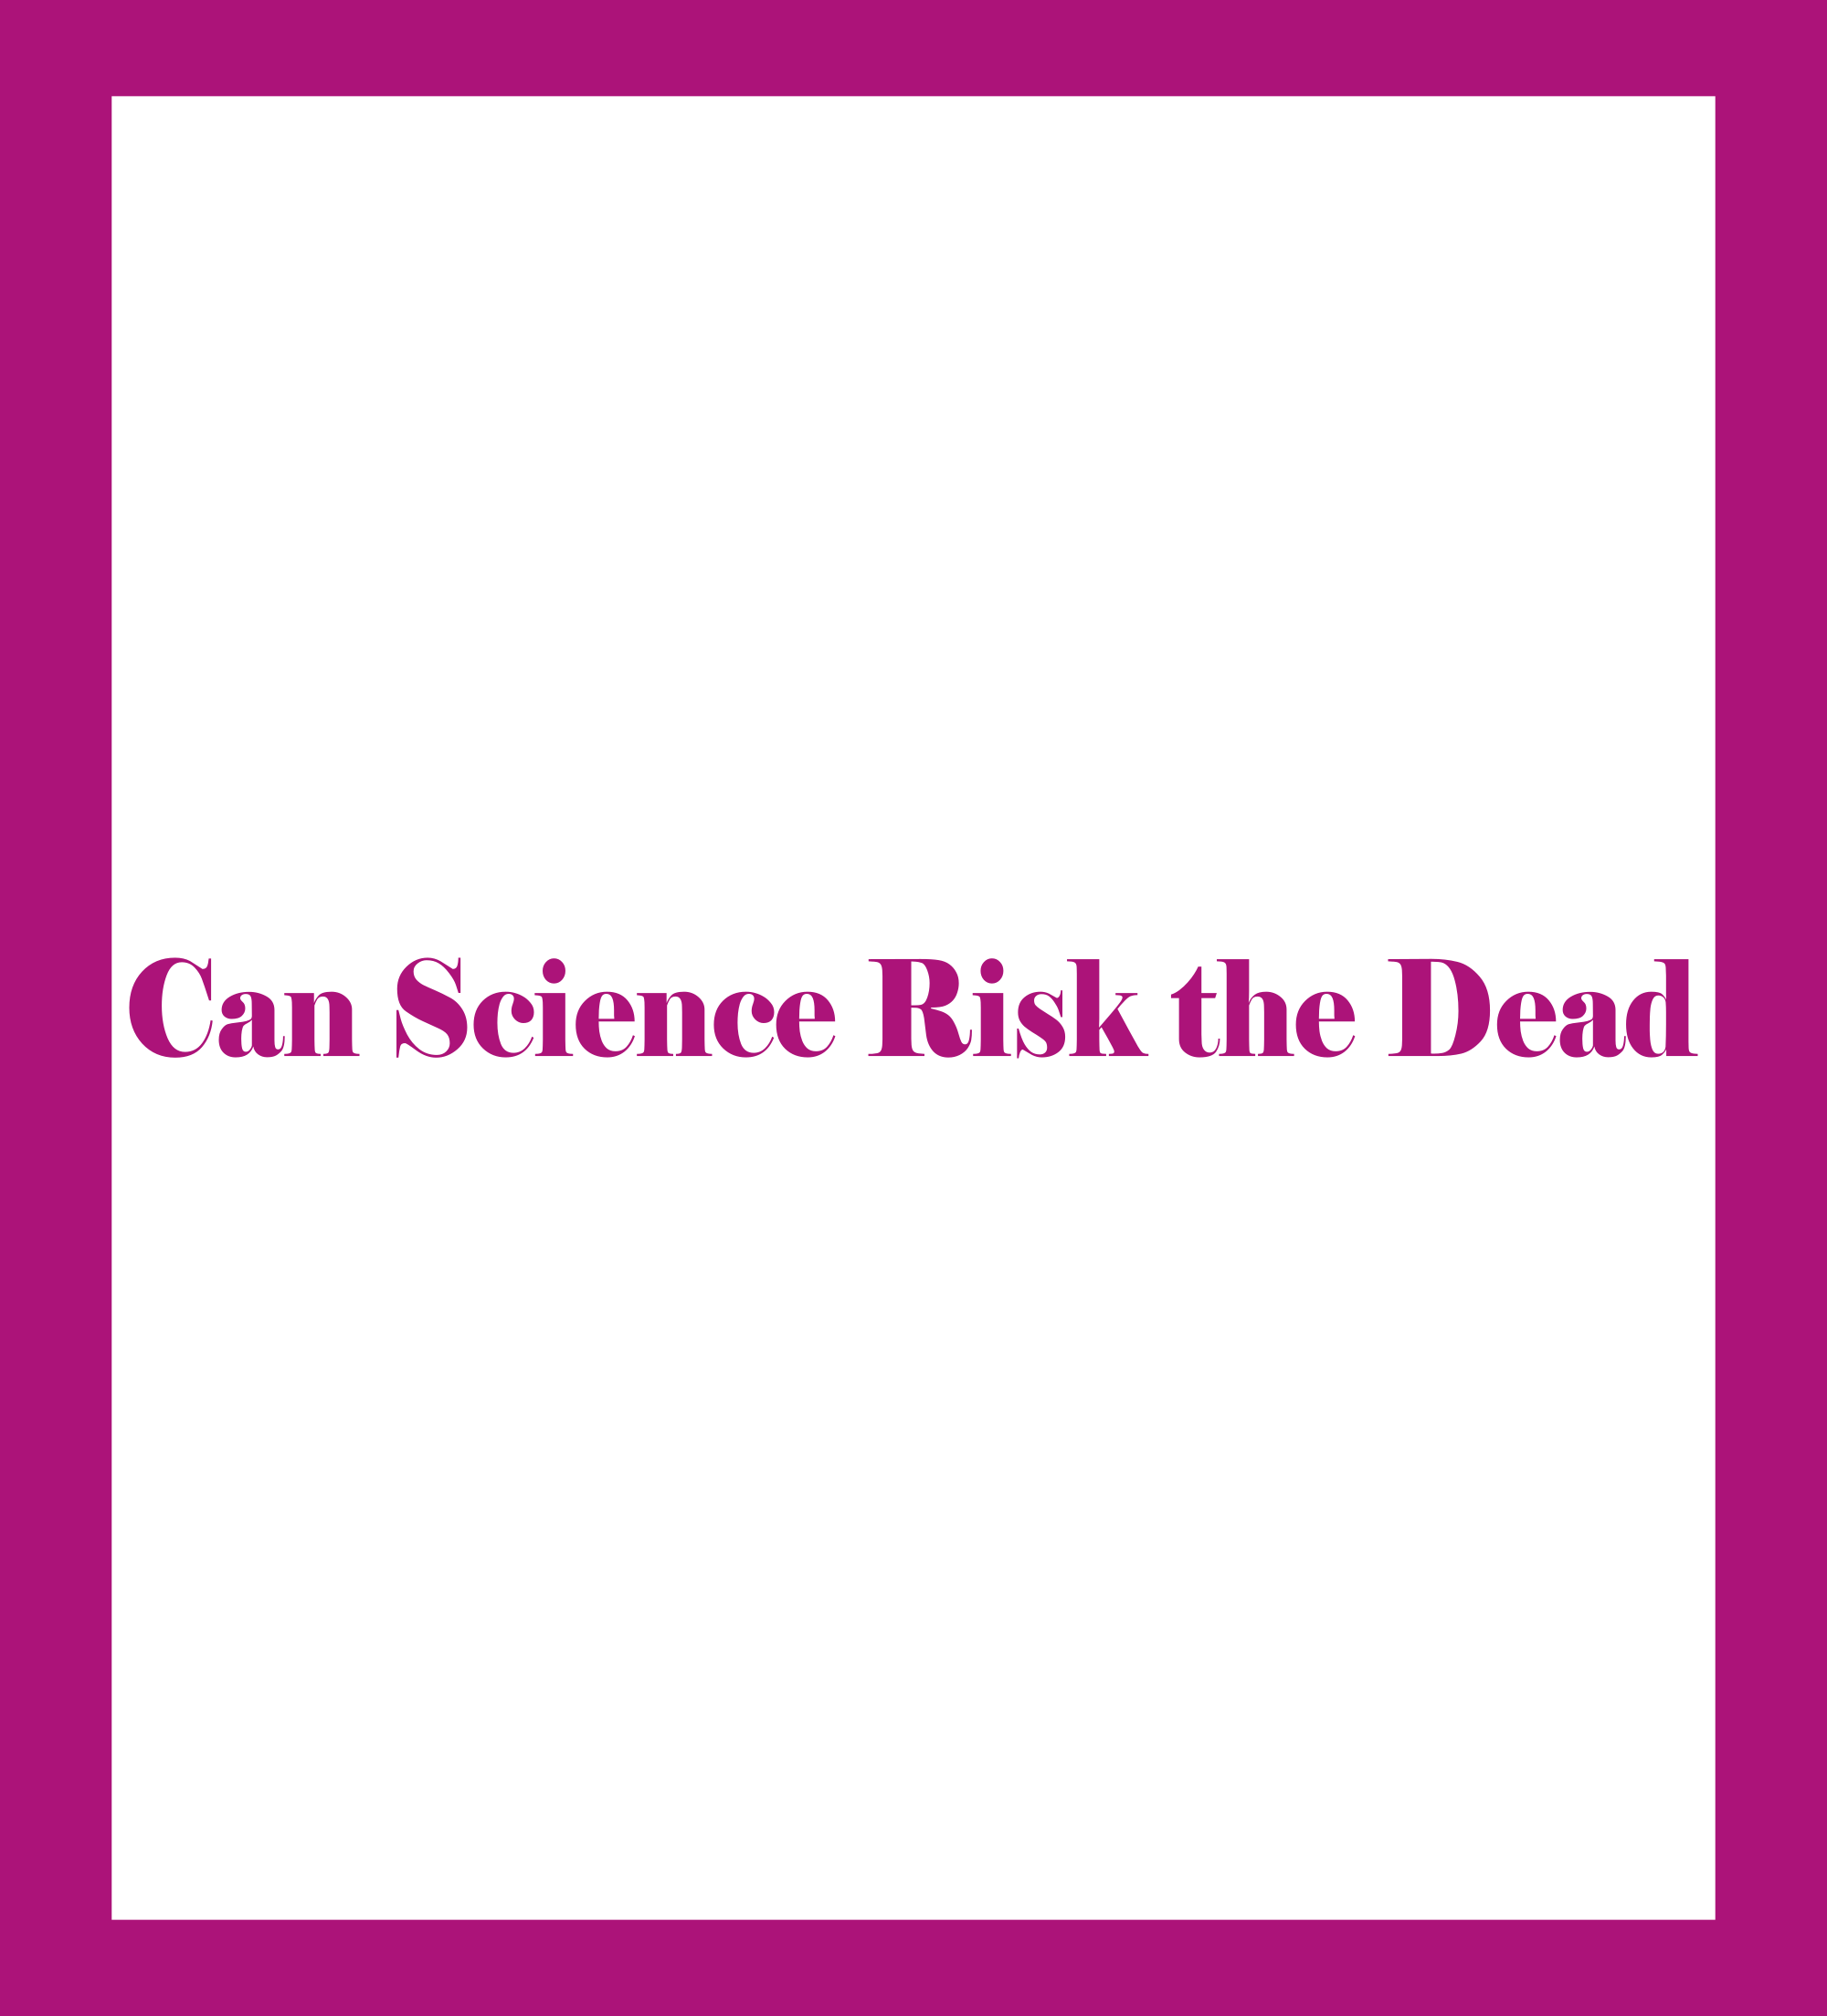 Puede la ciencia resucitar a los muertos